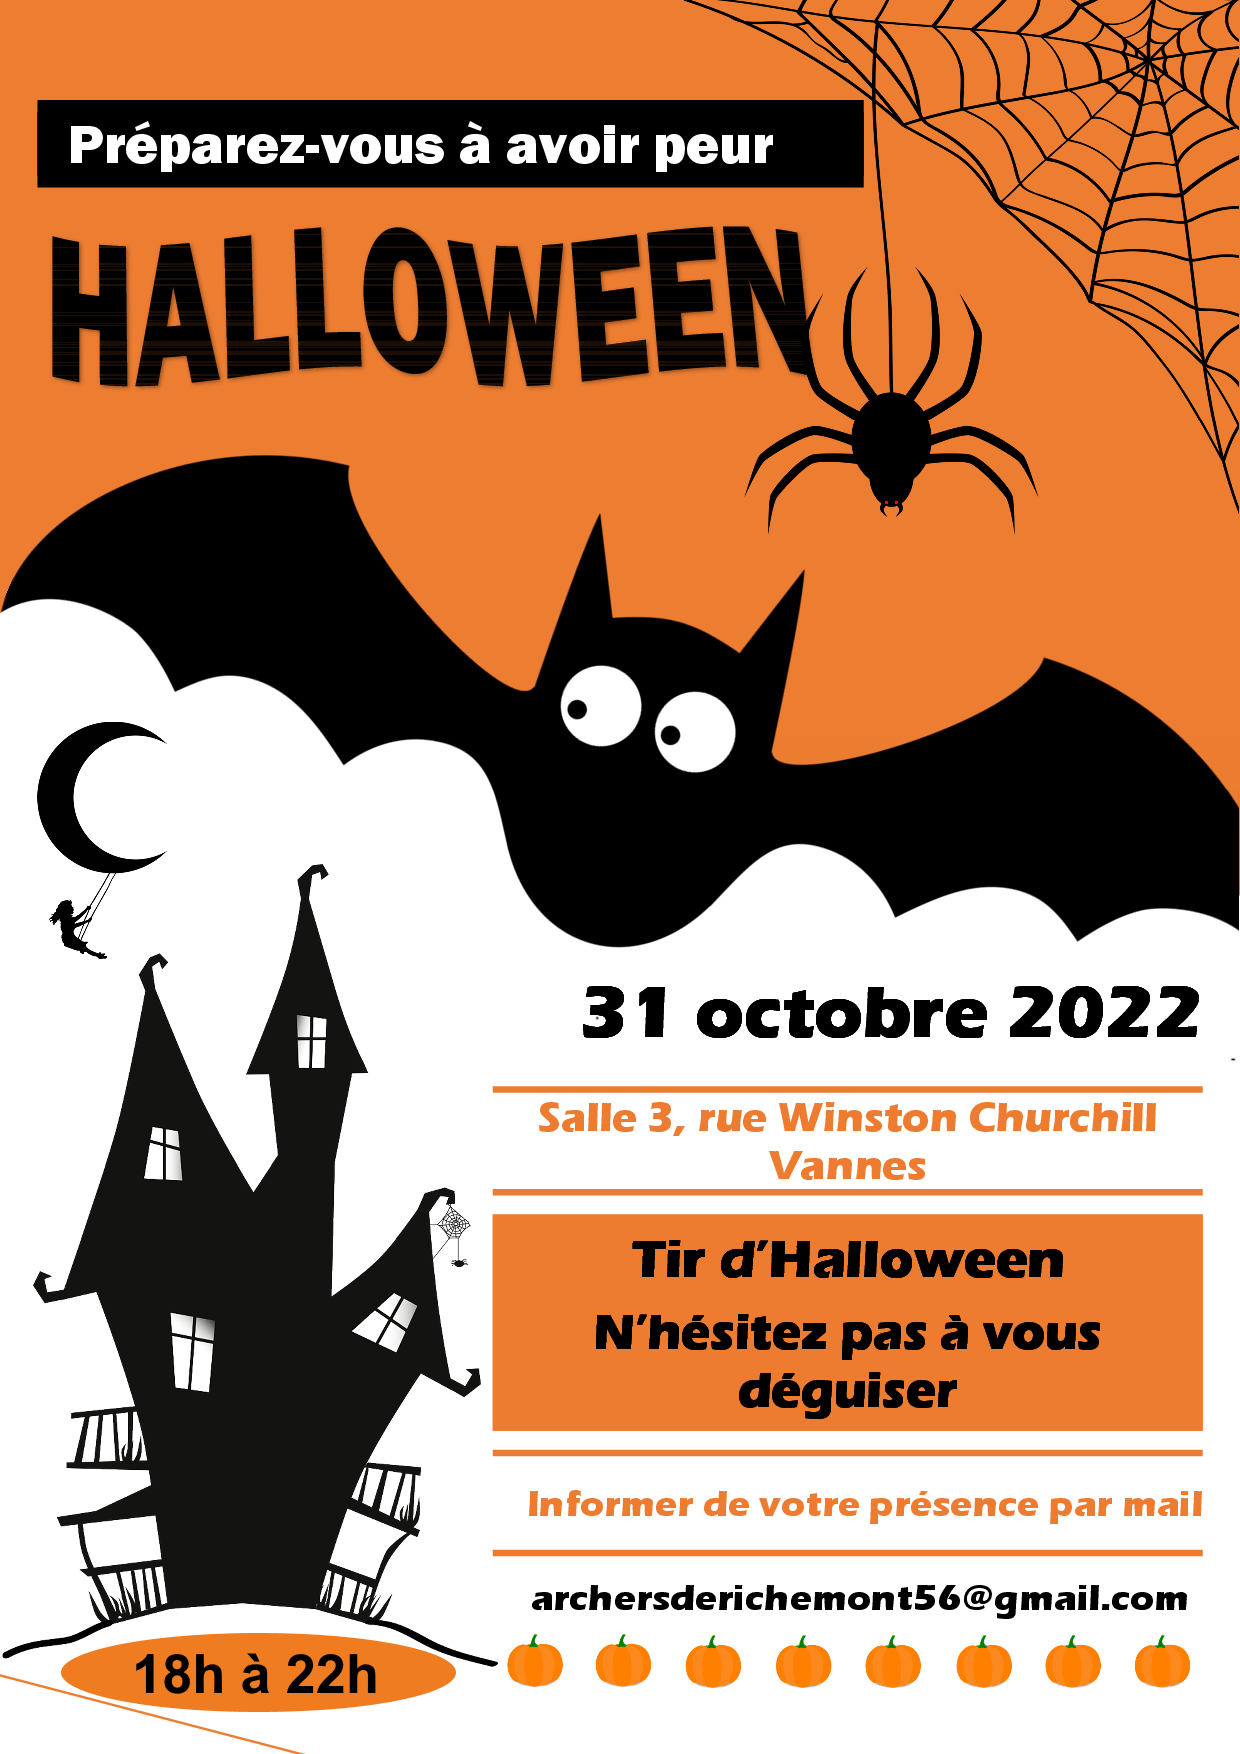 Soirée Halloween, lundi 31 octobre 2022